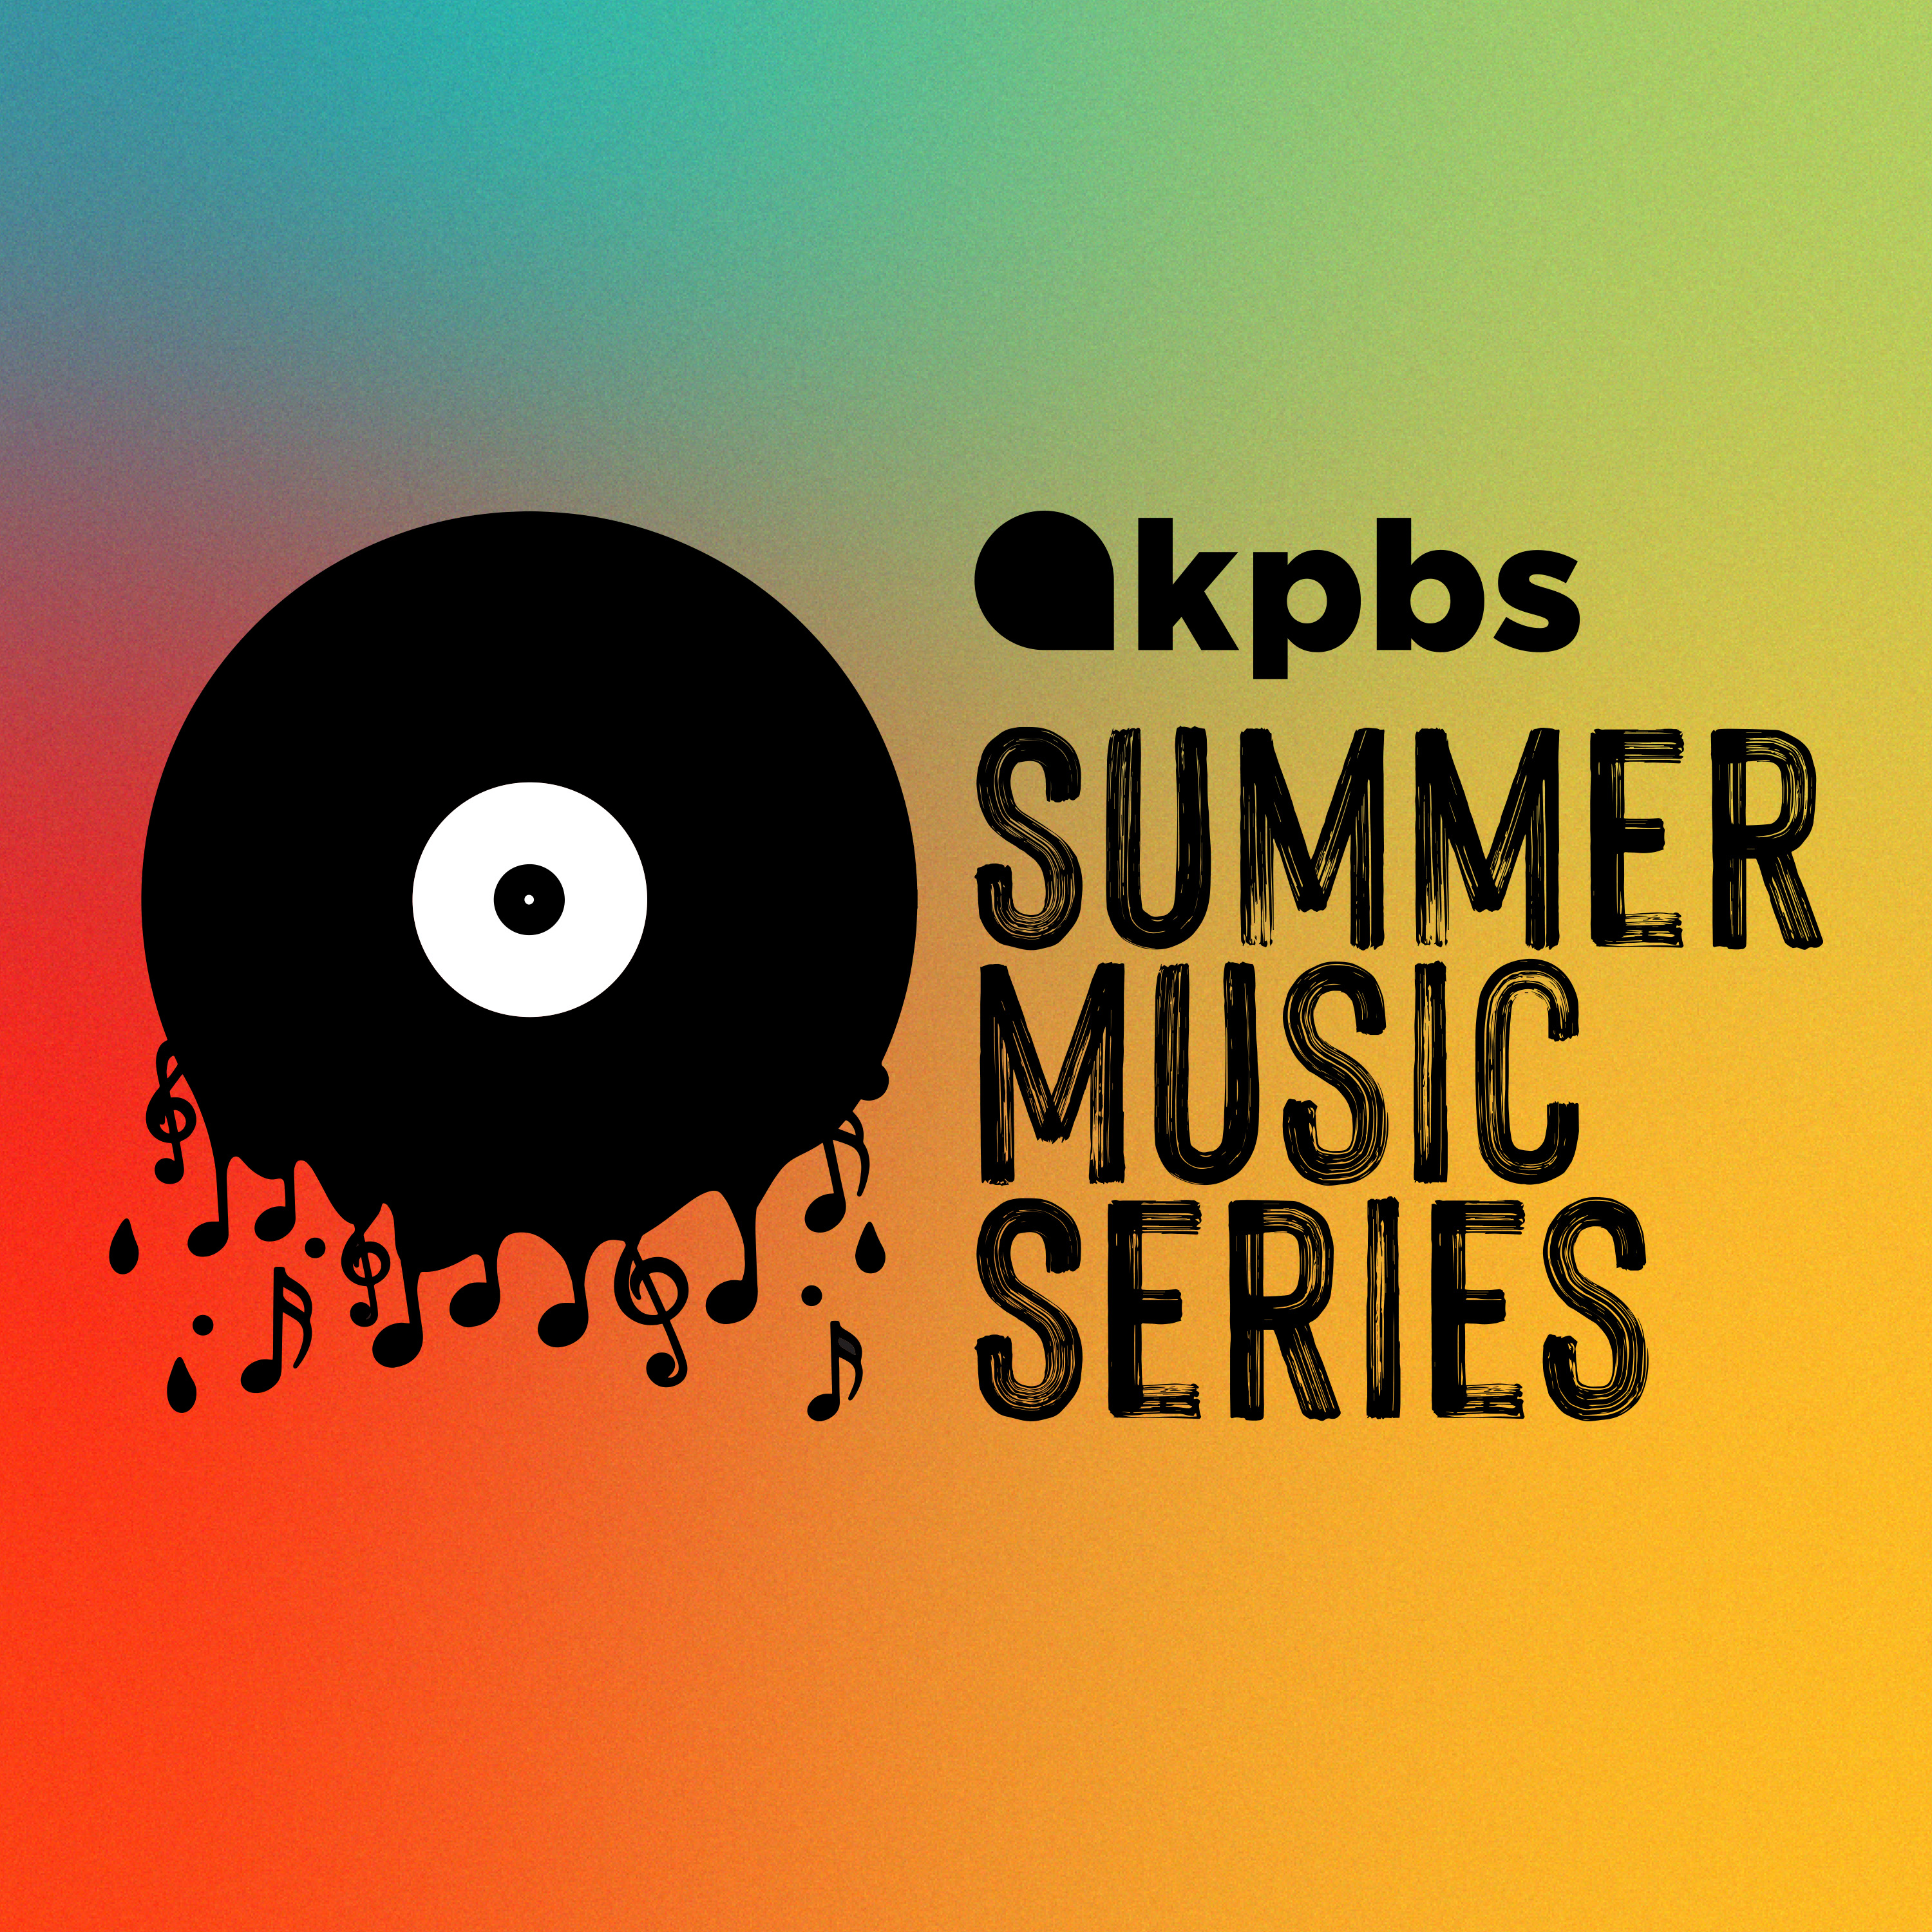 The KPBS Summer Music Series